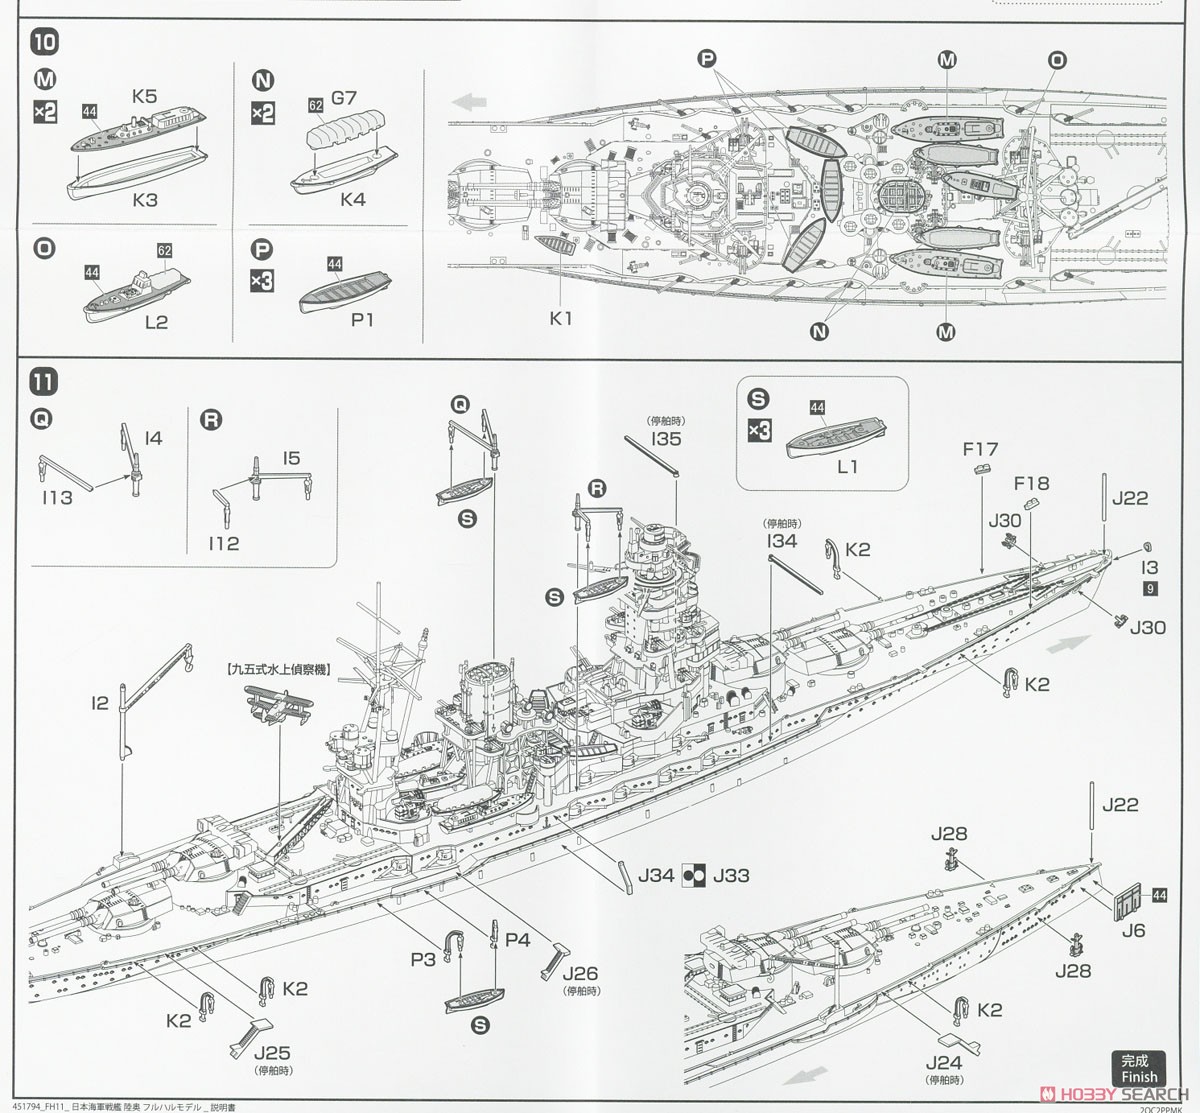 日本海軍戦艦 陸奥 フルハルモデル (プラモデル) 設計図6